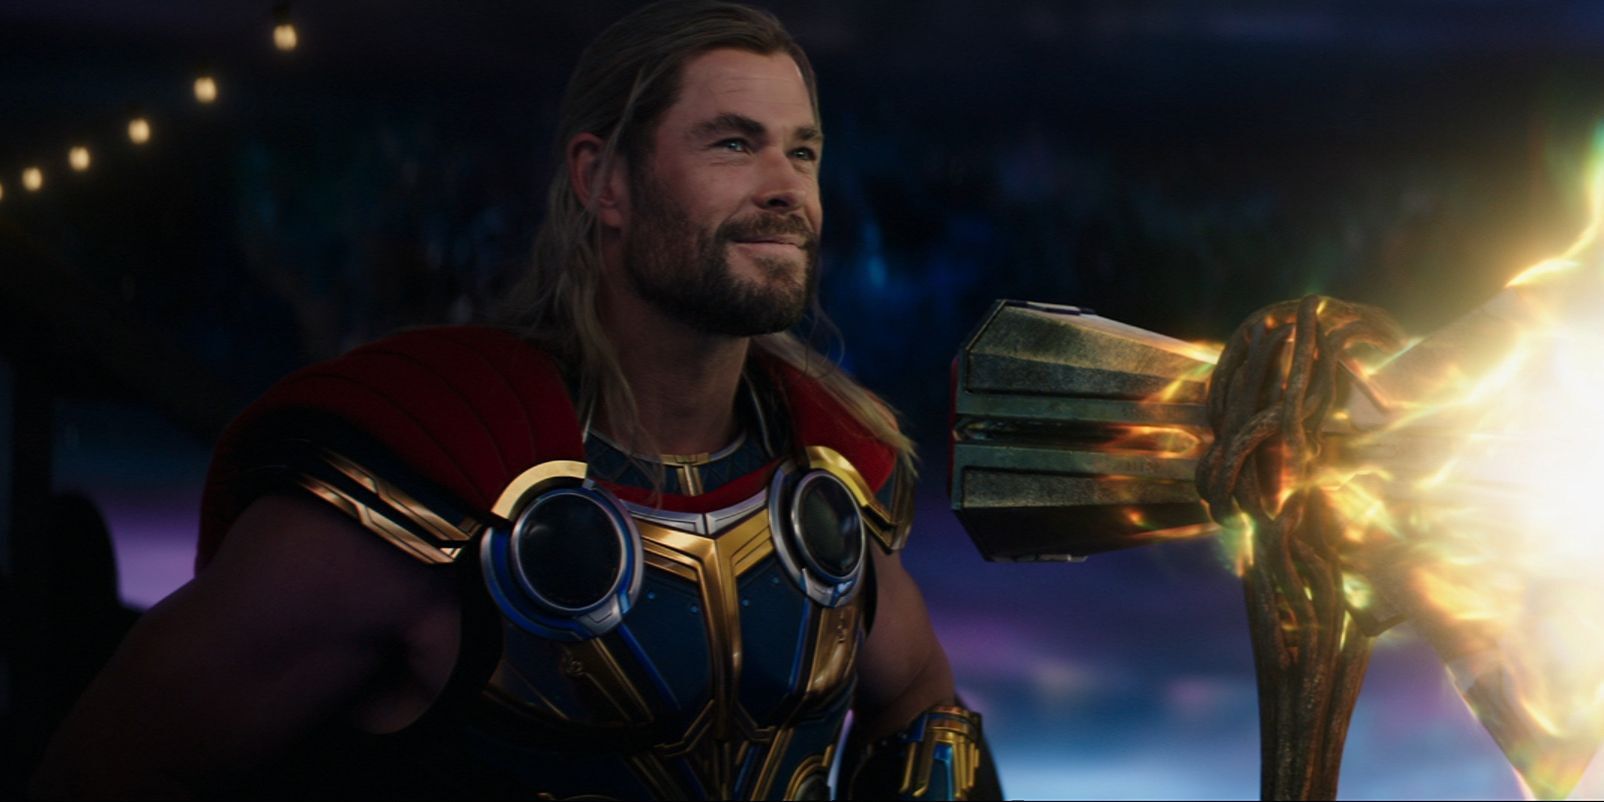 Thor holding stormbreaker in Love & Thunder